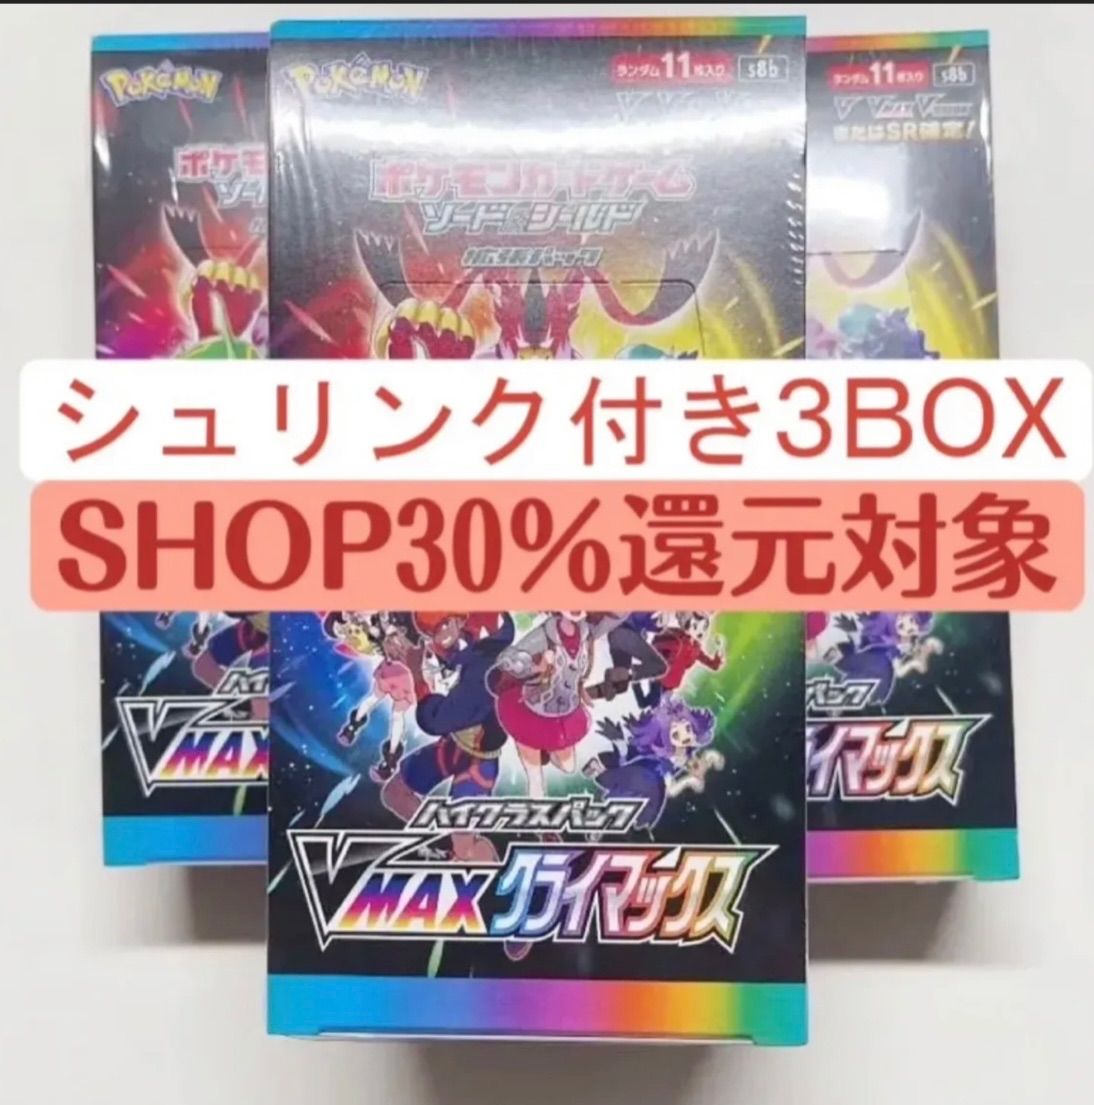 ポケモンカードゲームハイクラスパックVMAXクライマックス3BOX - メルカリ